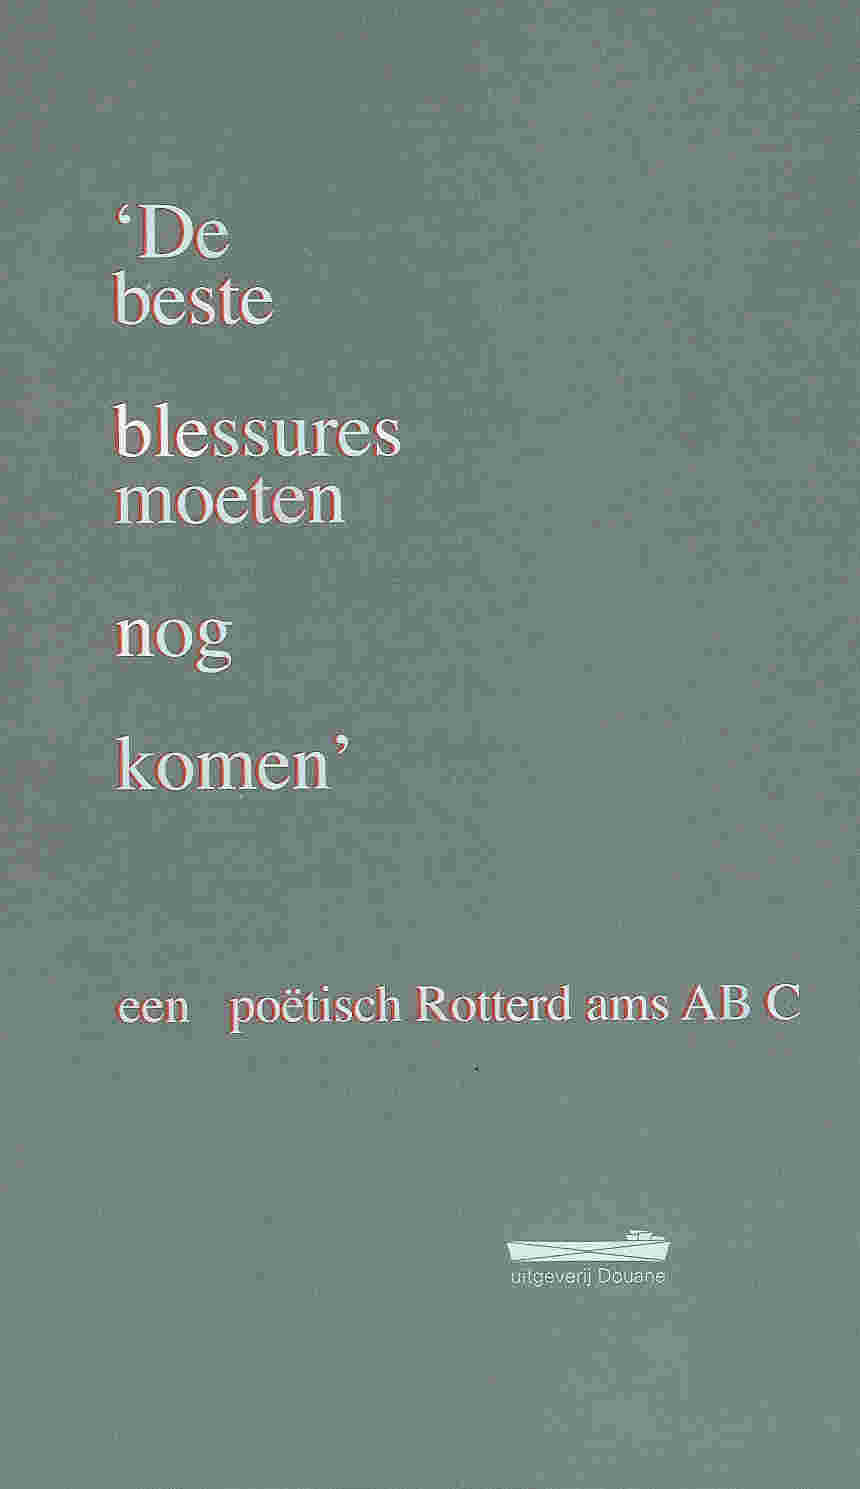 De beste blessures moeten nog komen, een poëtisch Rotterdams ABC, Uitgeverij Douane, Rotterdam 2006